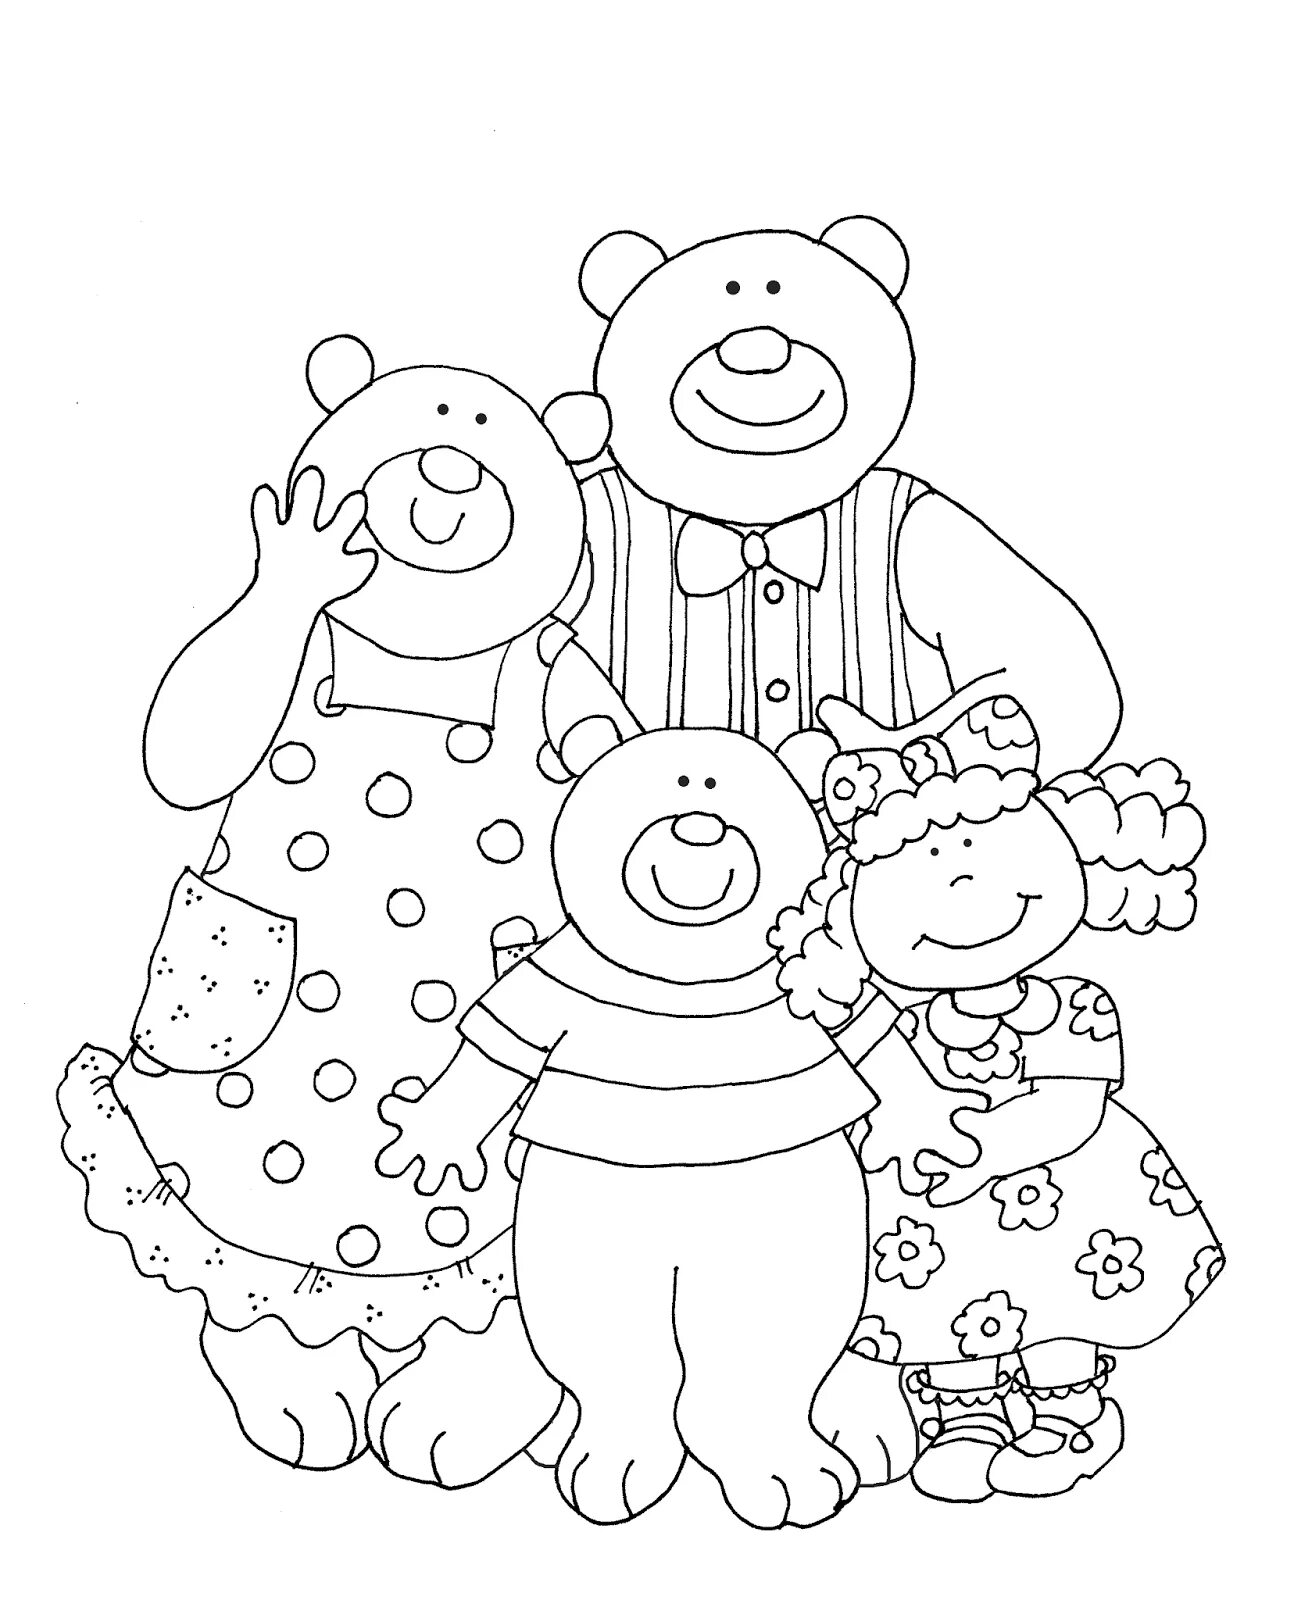 Bear family #6